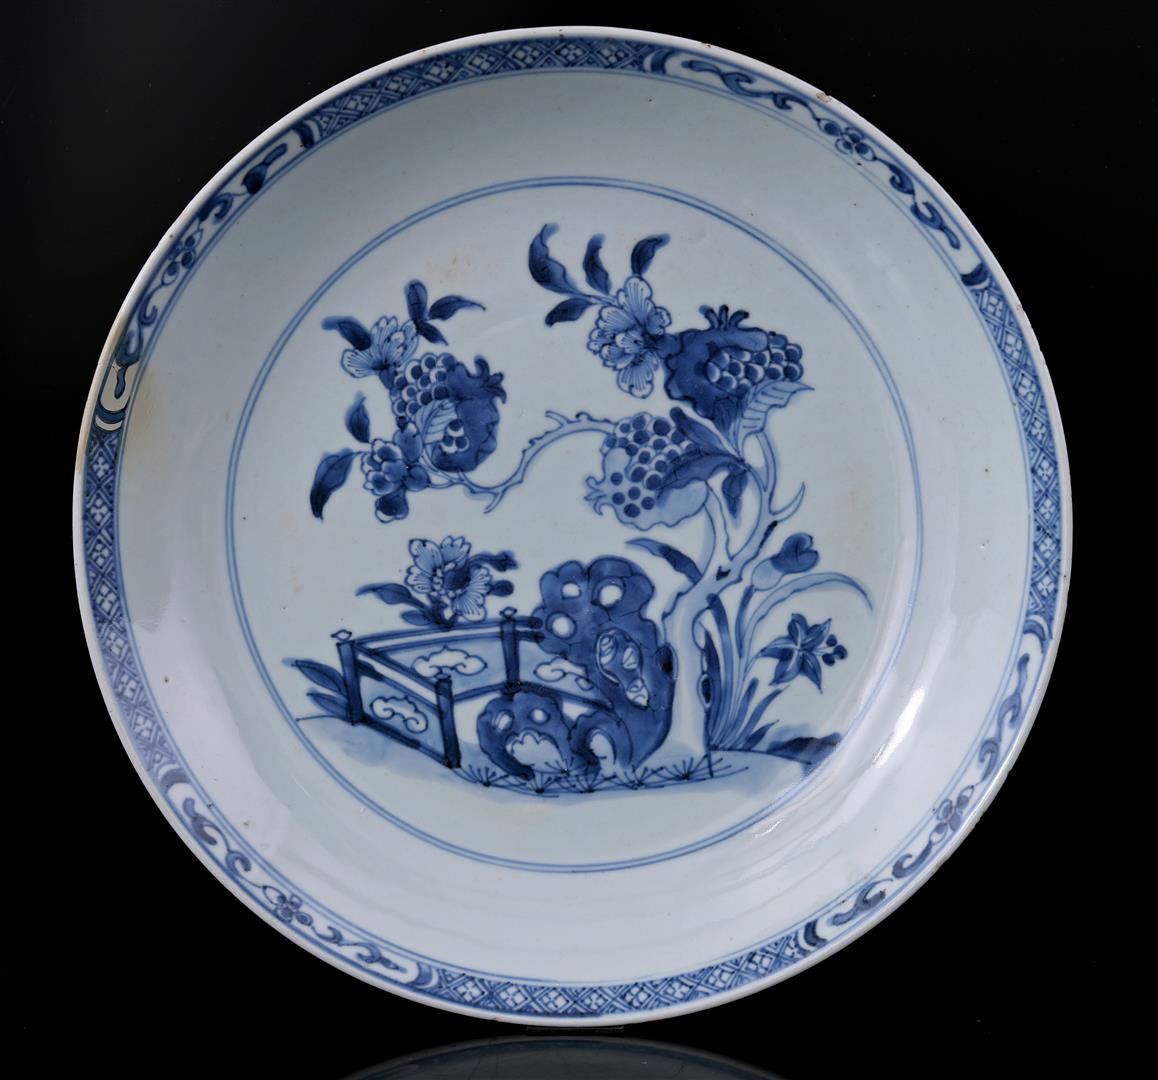 Porcelain dish, Qianlong